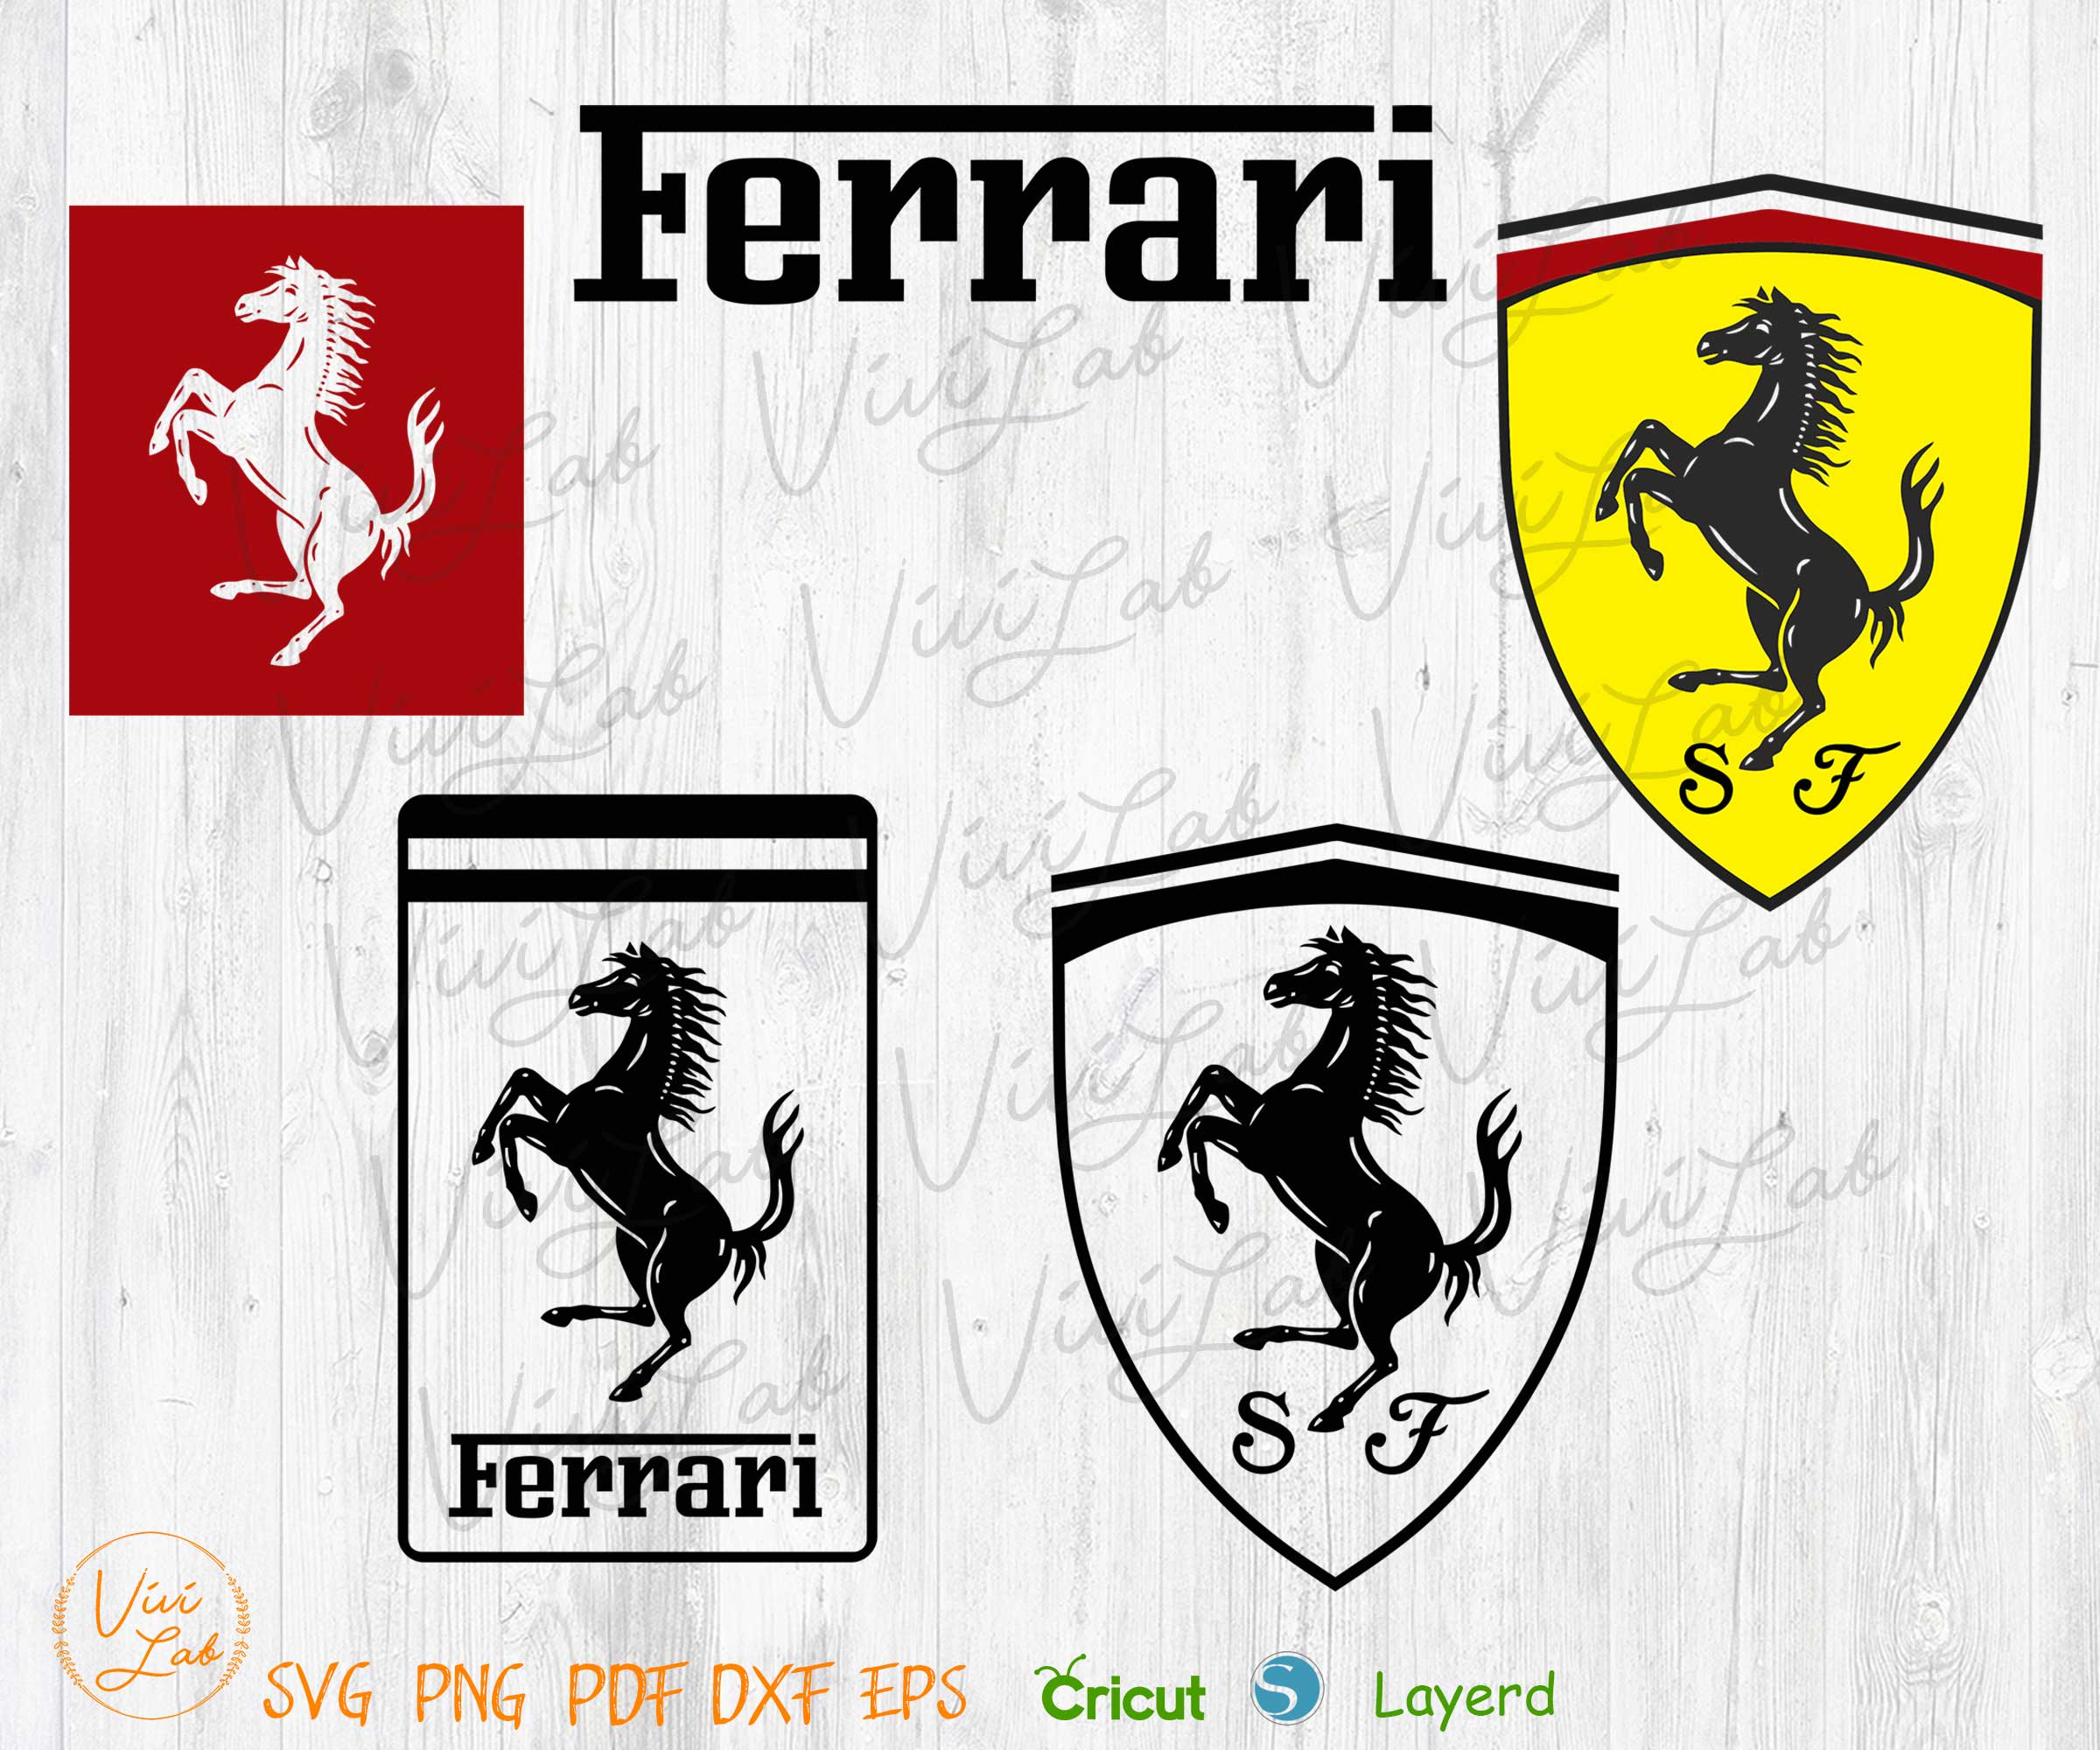 Ferrari logo svg png vector